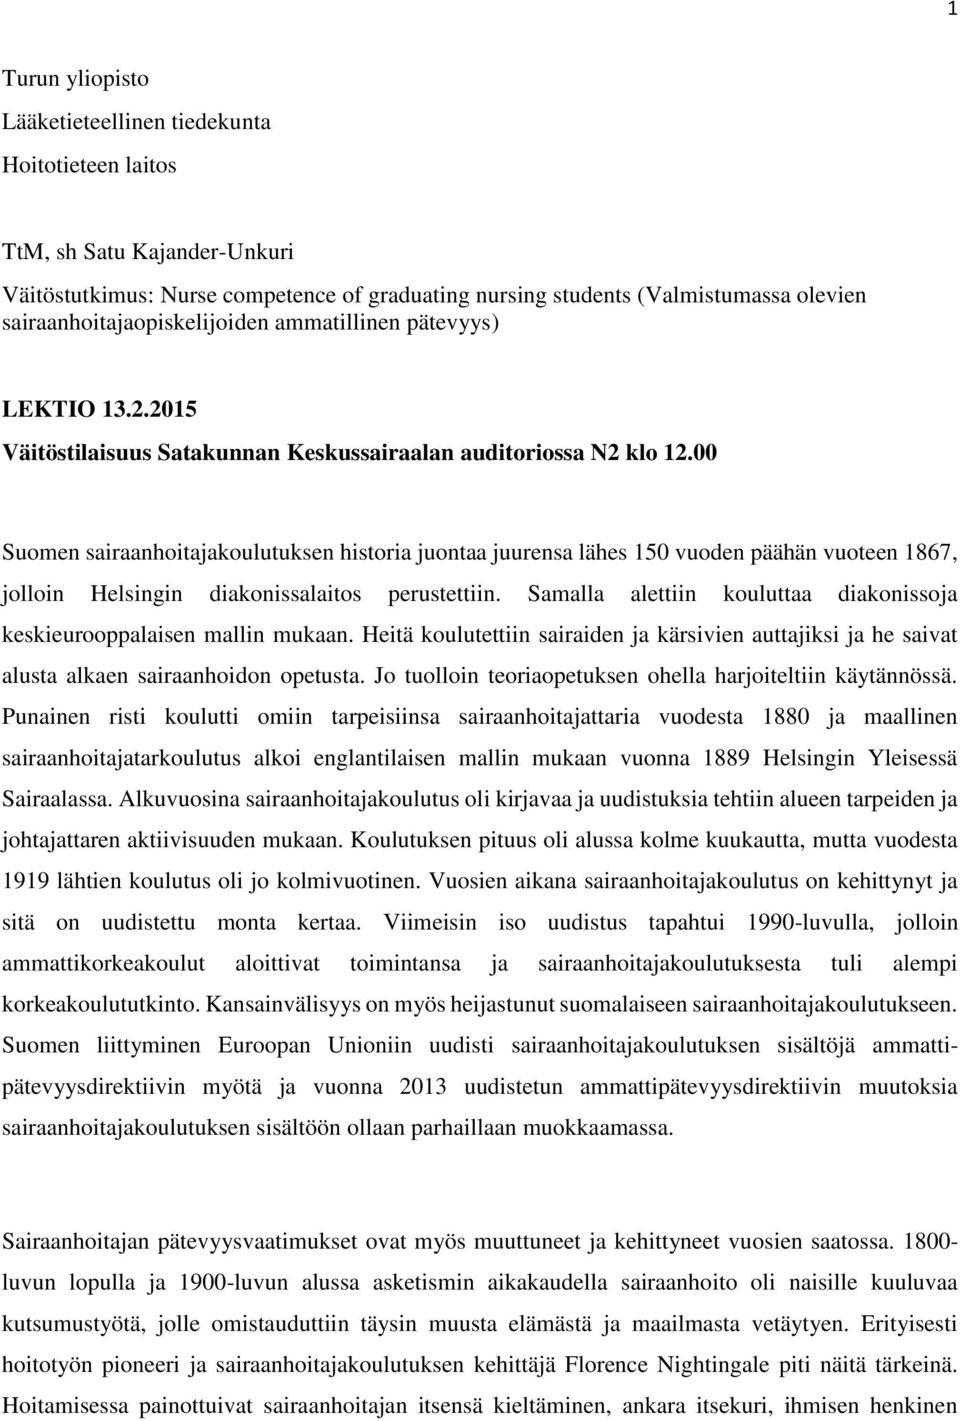 00 Suomen sairaanhoitajakoulutuksen historia juontaa juurensa lähes 150 vuoden päähän vuoteen 1867, jolloin Helsingin diakonissalaitos perustettiin.